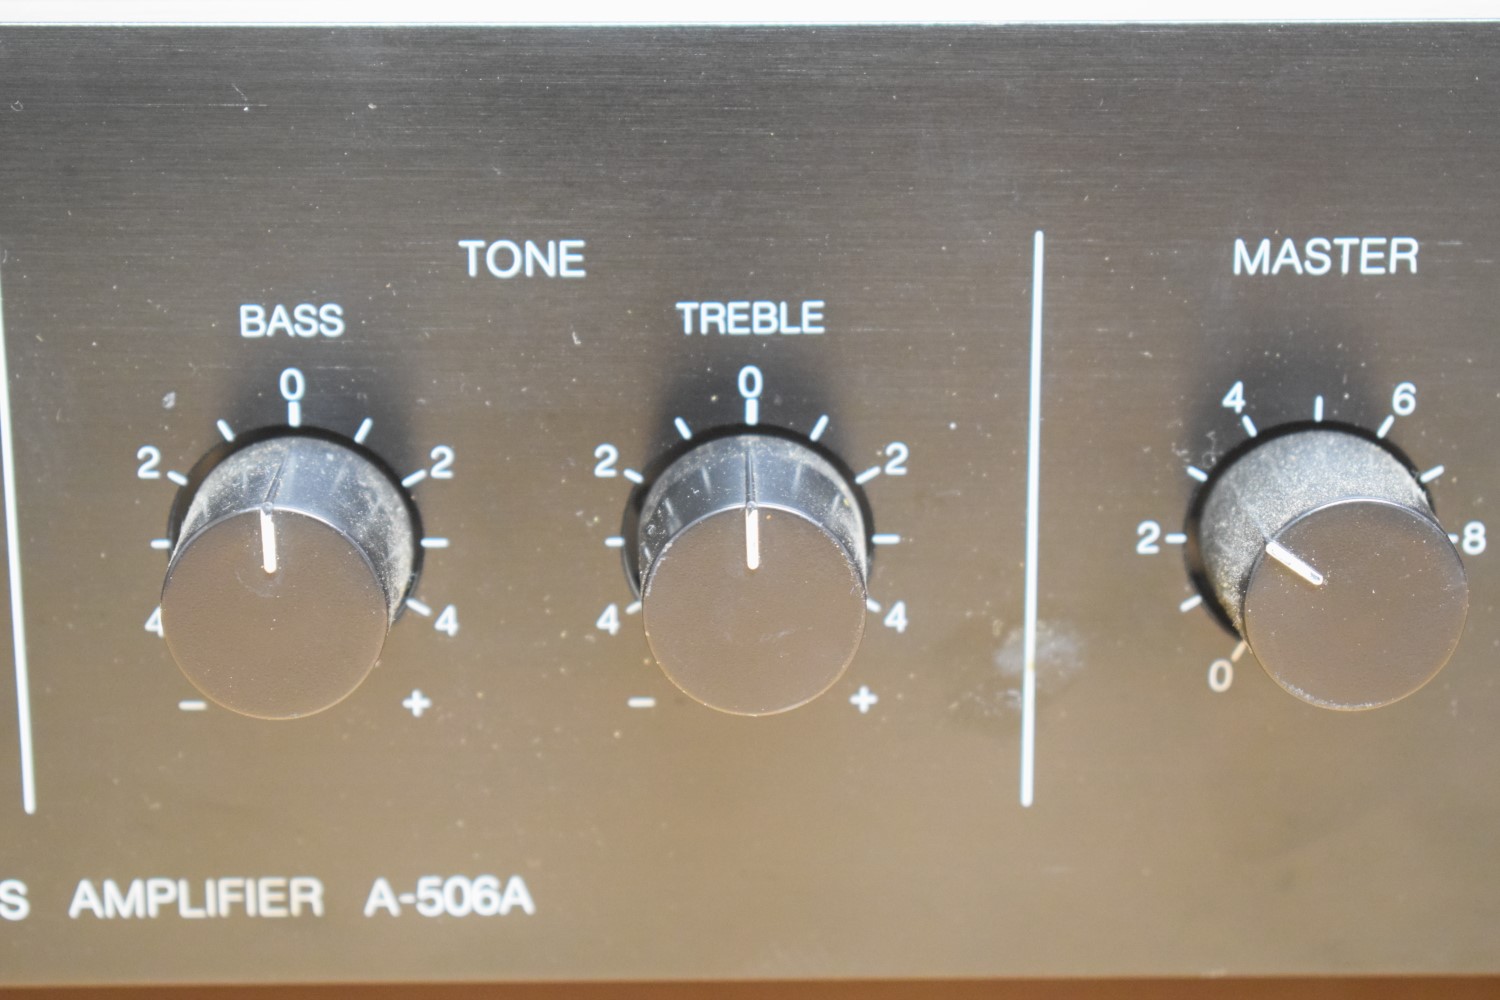 TOA 500 Series A-506A PA / Mixer Versterker